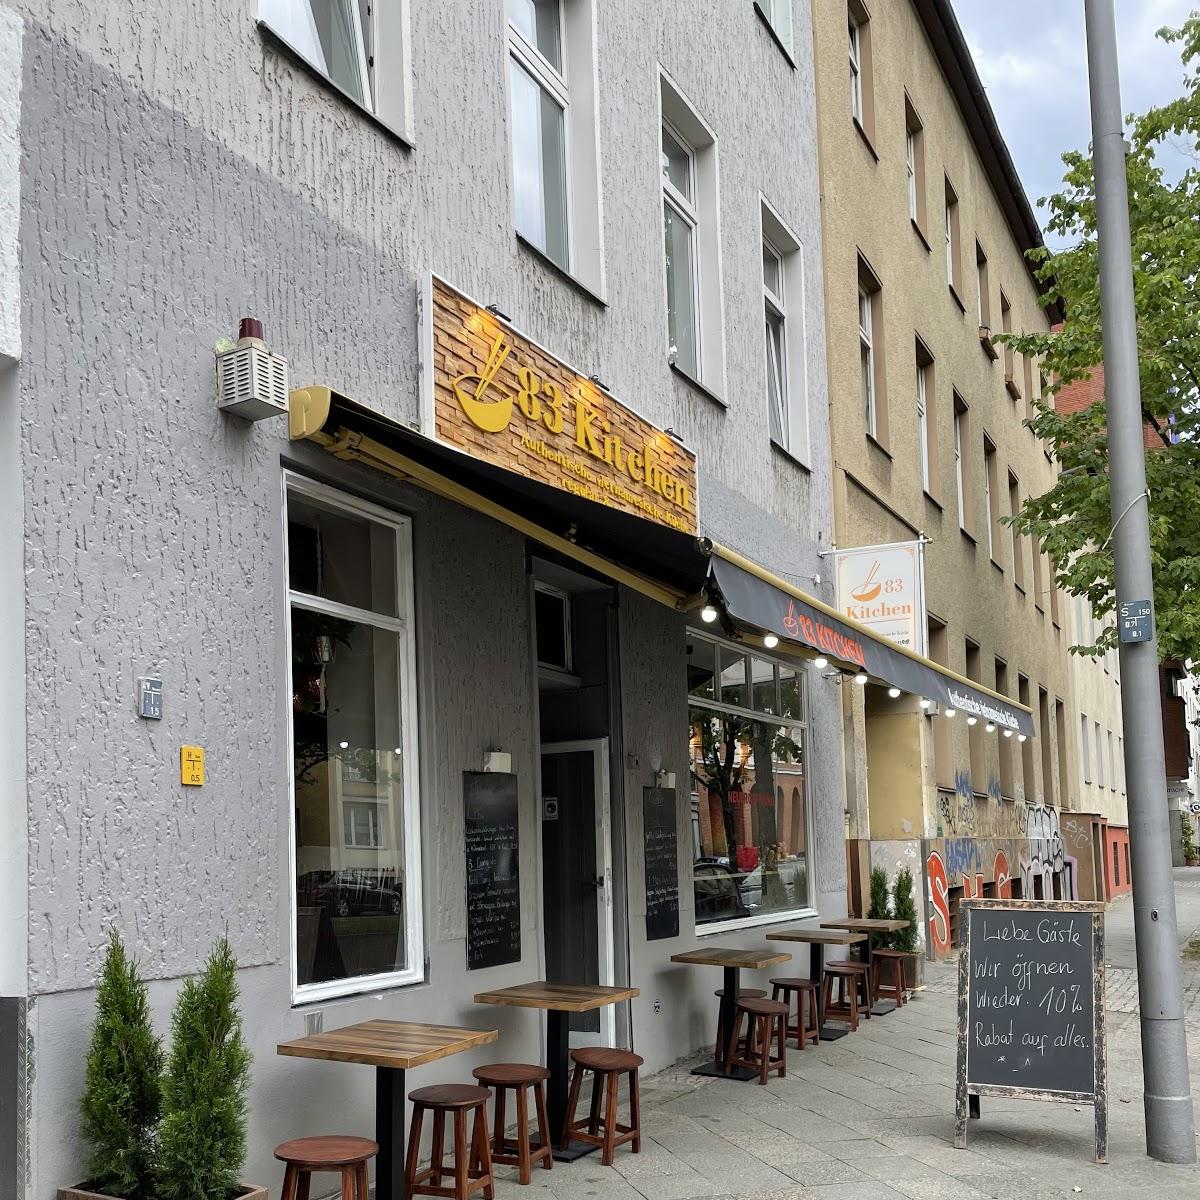 Restaurant "83 Kitchen Restaurant" in Berlin